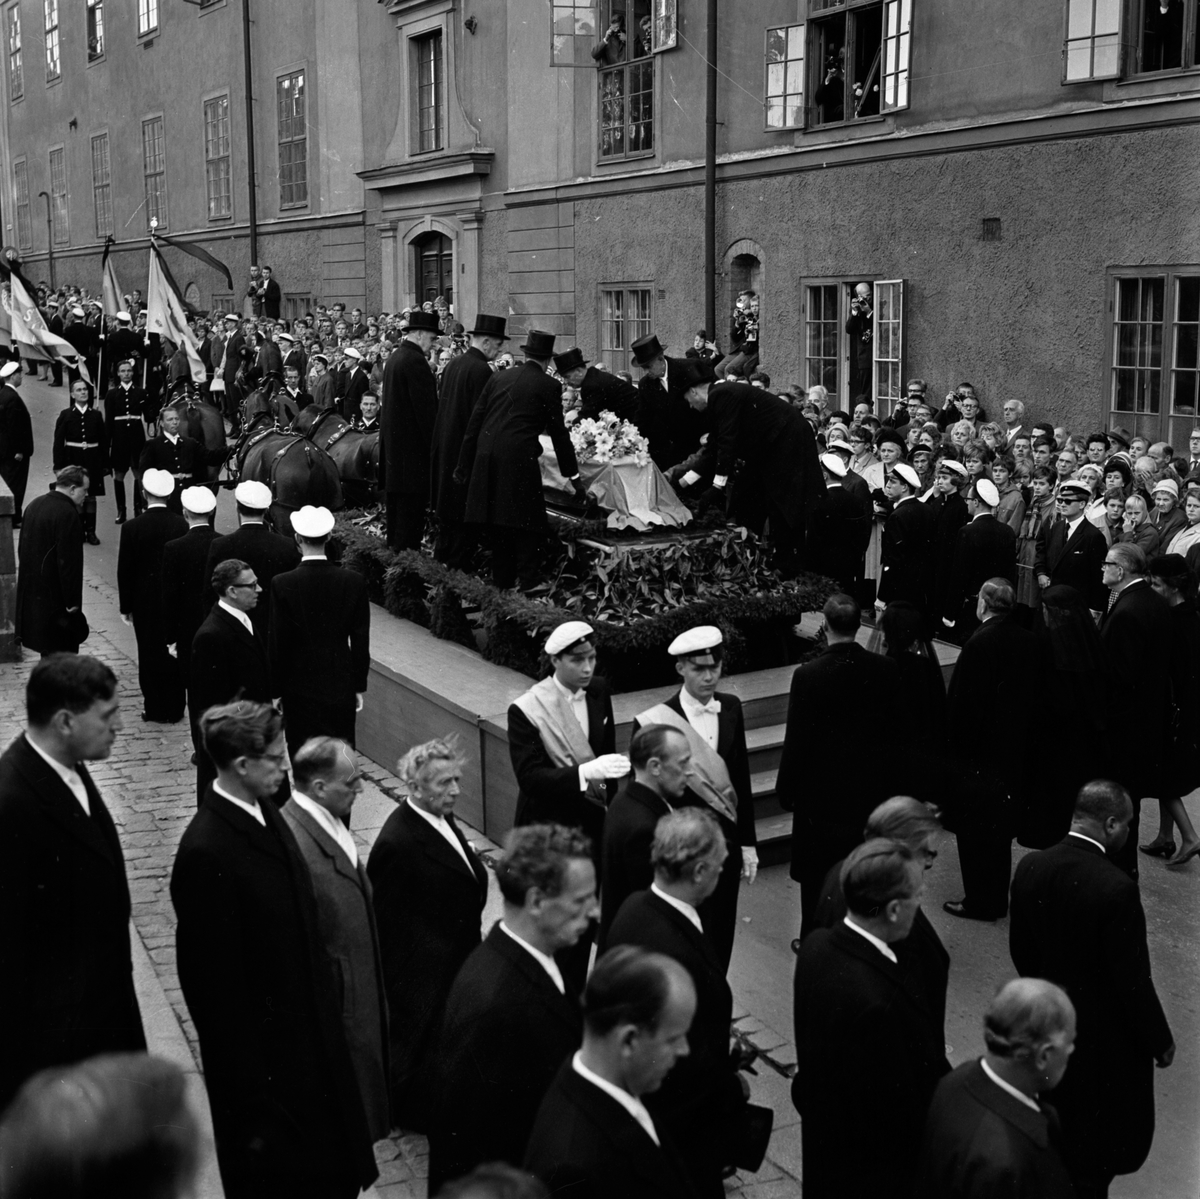 Dag Hammarskjölds begravning, utanför Uppsala domkyrka efter jordfästningen, Uppsala 29 september 1961